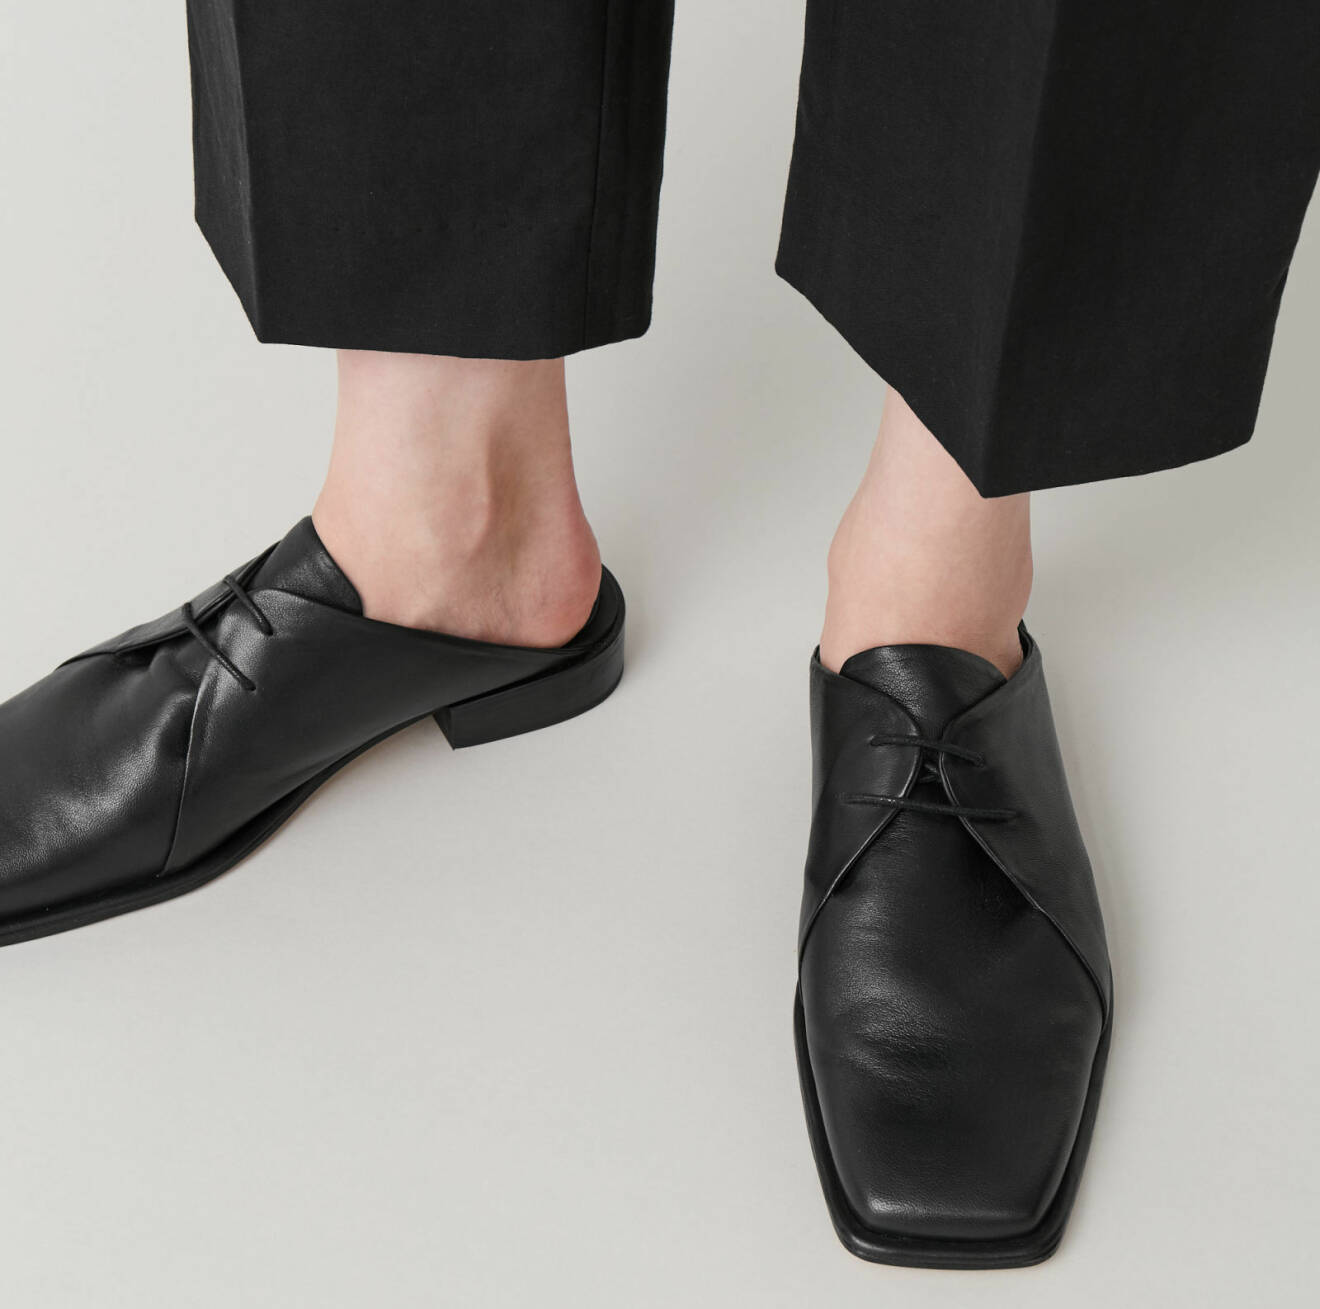 Svarta slip in-skor med snörning och carré-tå, från Cos